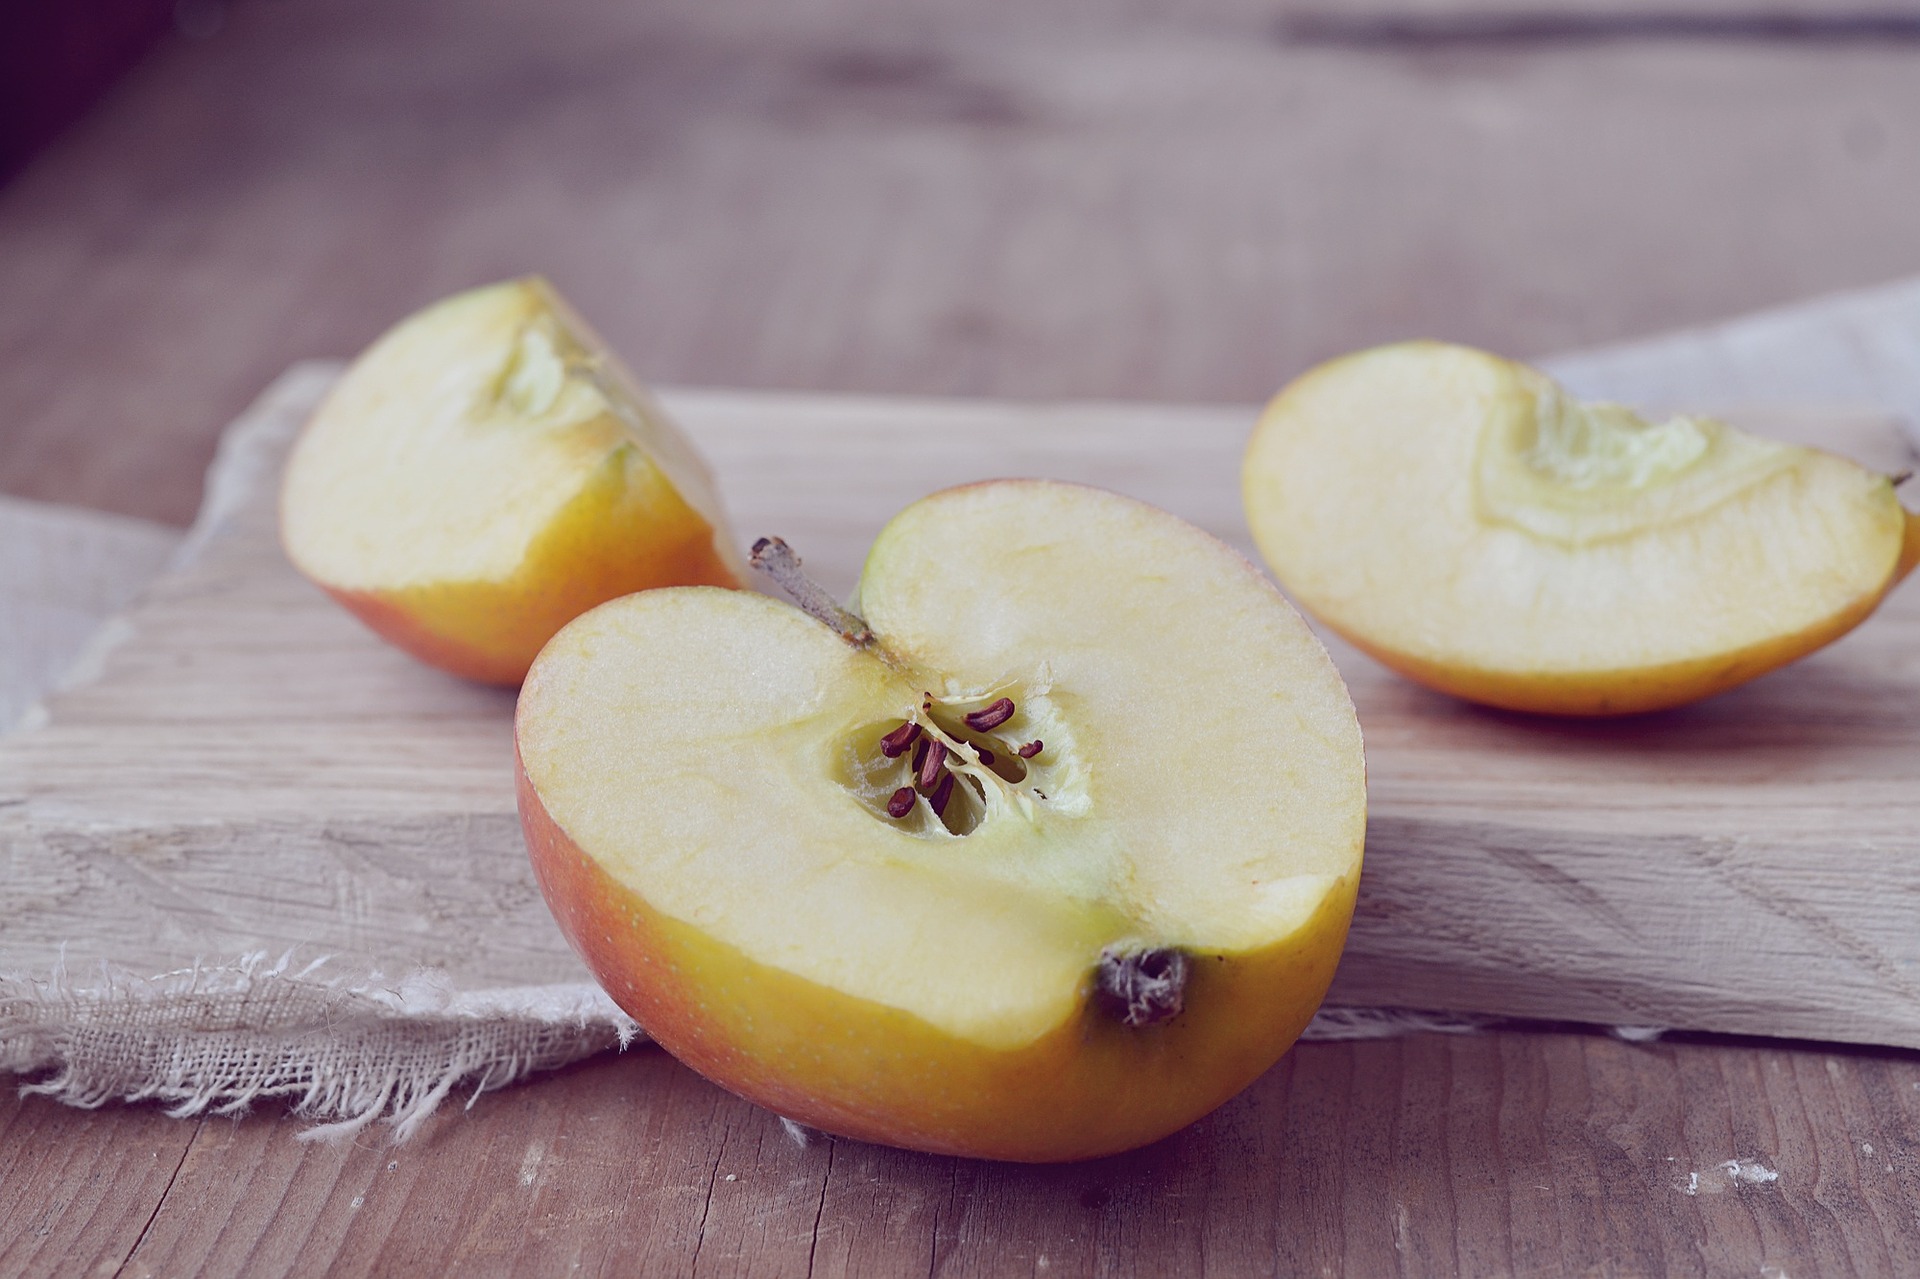 Jabłko “zero waste” – ciekawe sposoby na wykorzystanie skórek i gniazd nasiennych